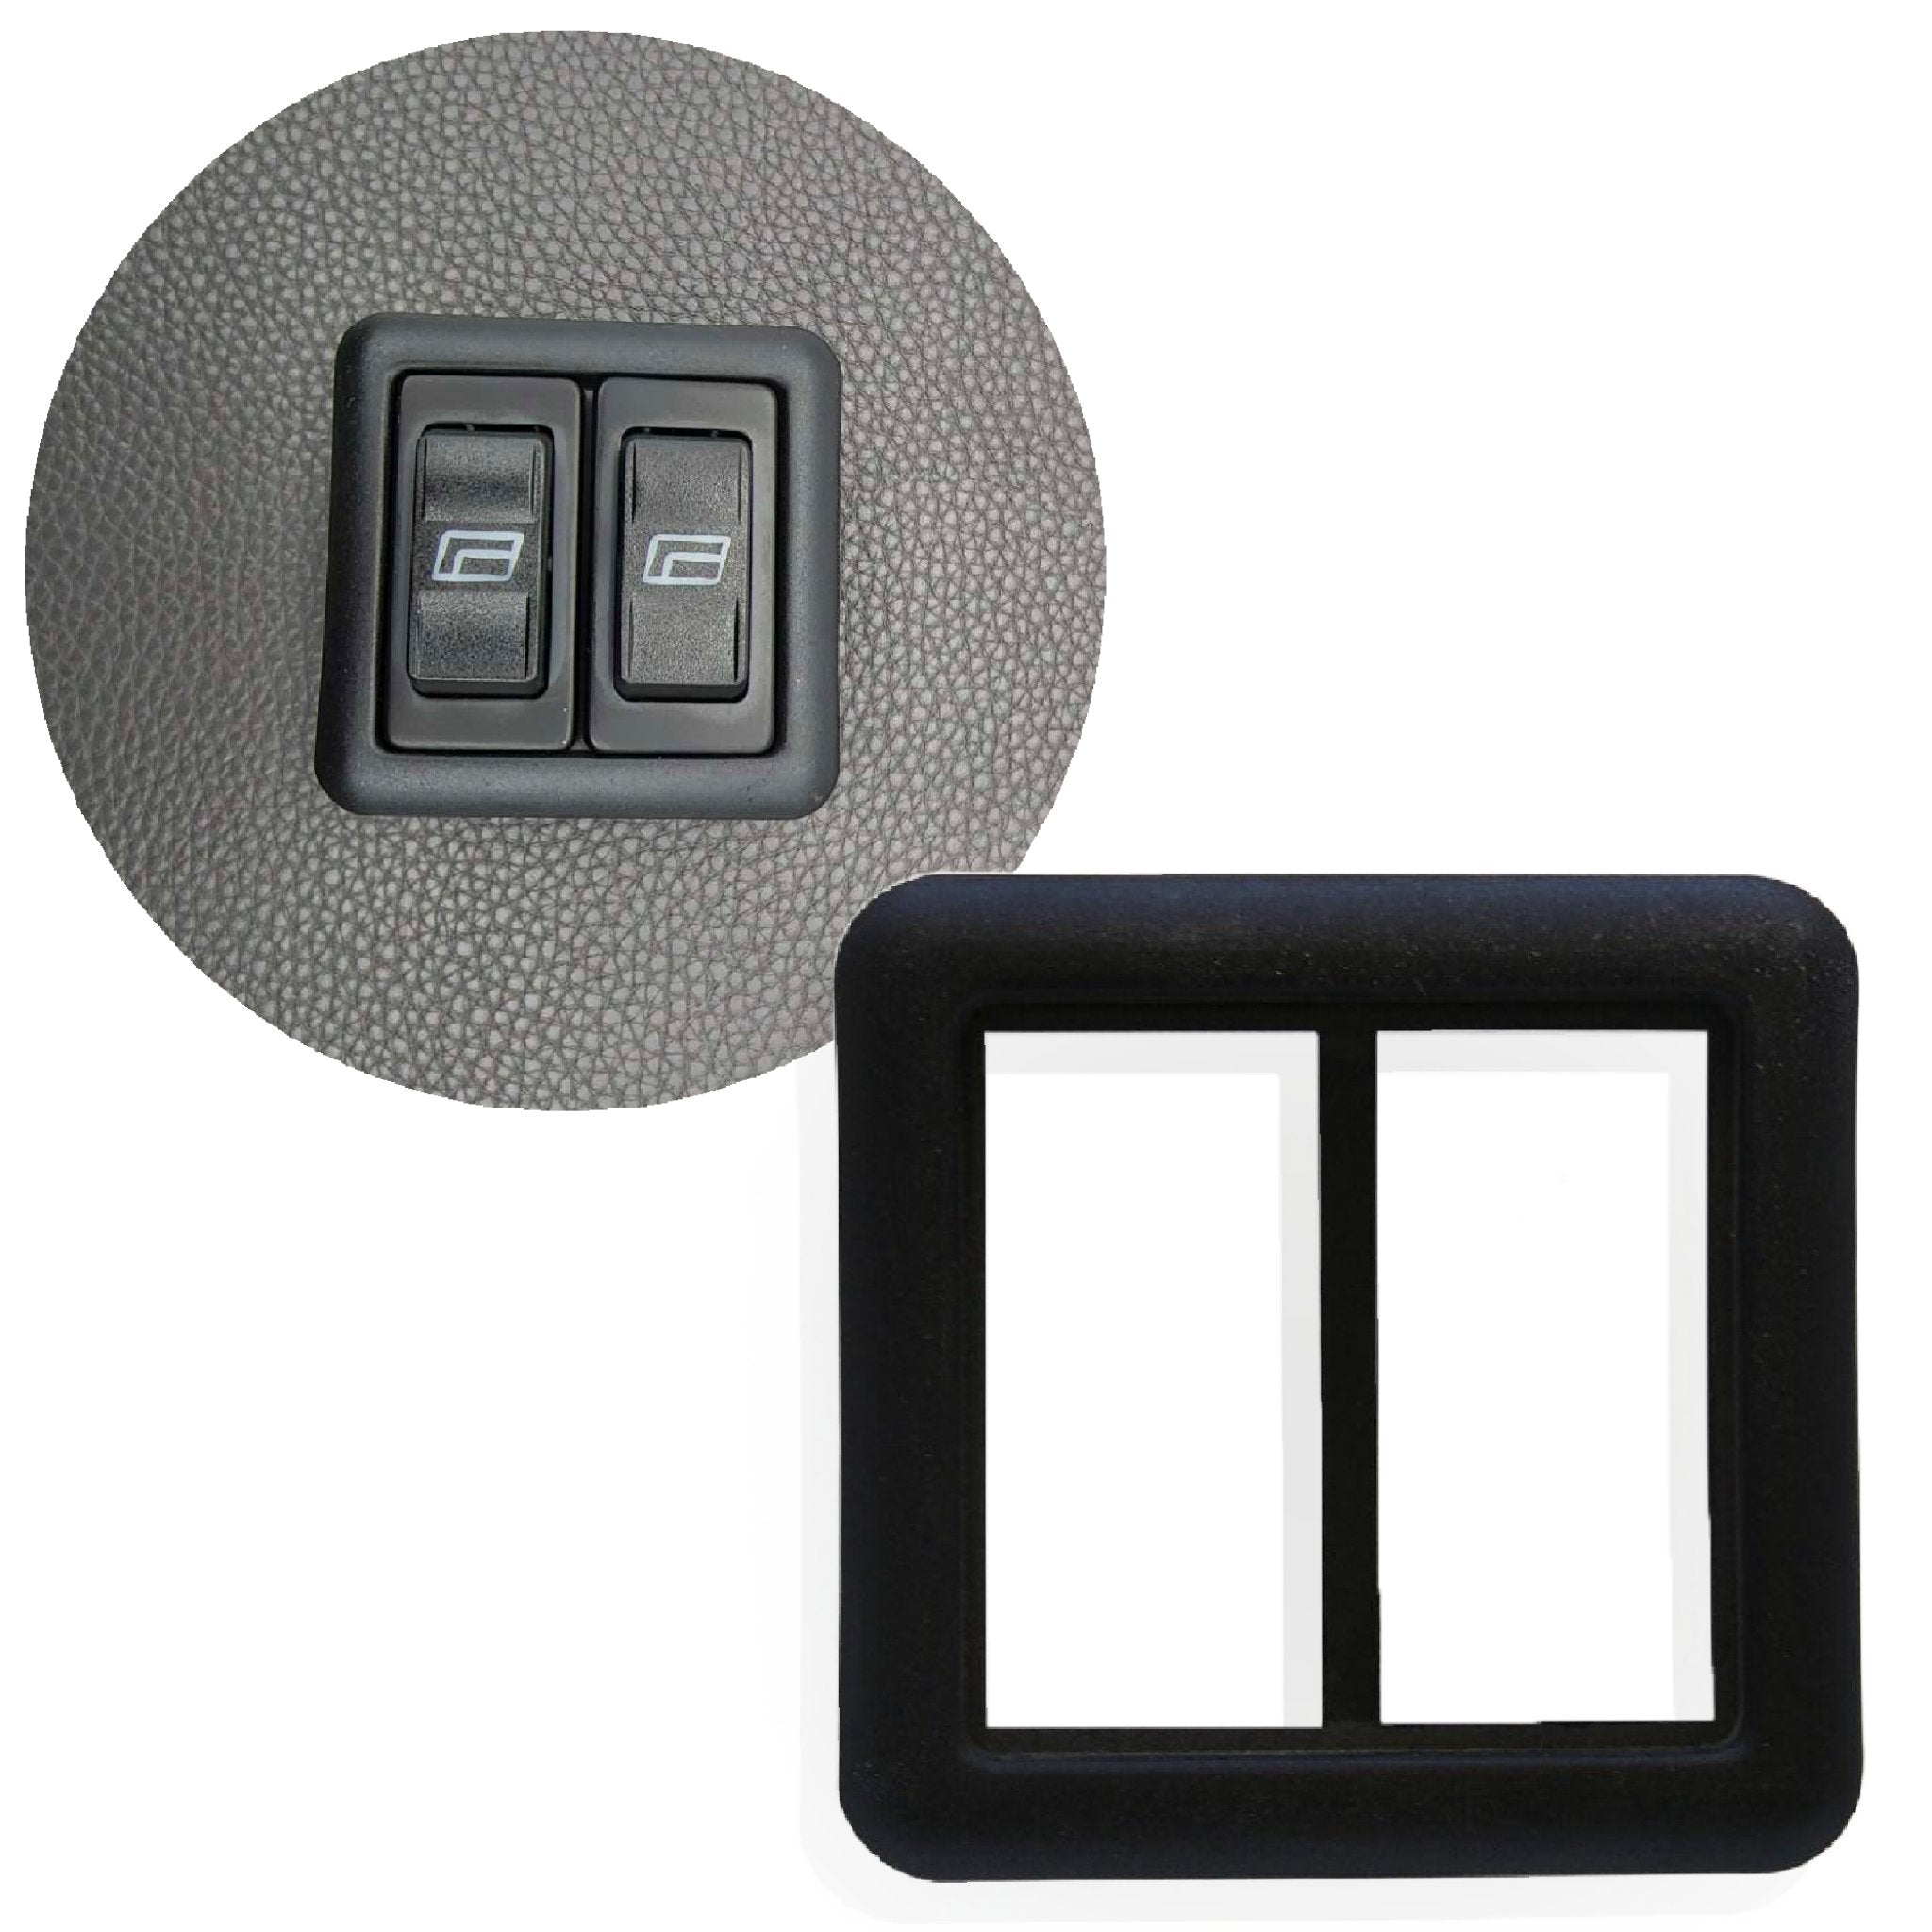 Marco de interruptor basculante doble negro, embellecedor de bisel, cubierta de Panel de puerta, cerraduras de ventanas eléctricas